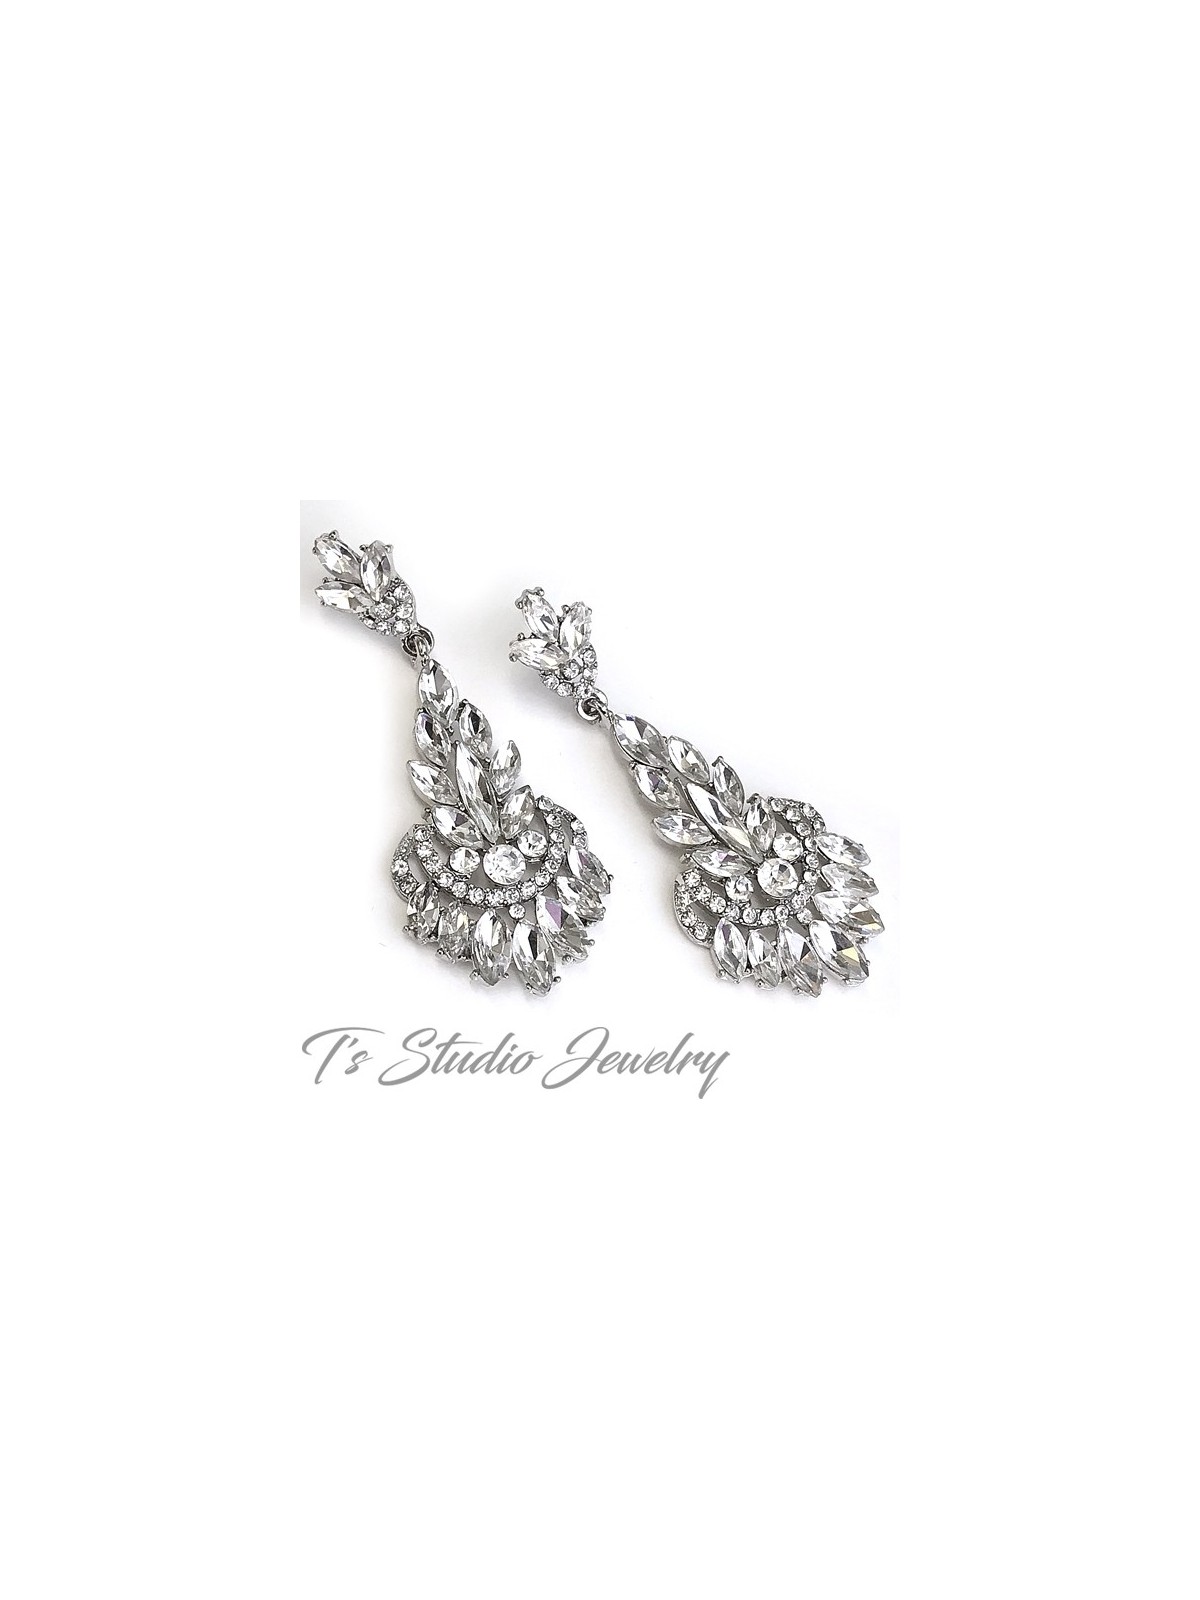 Bridal Diamond Earrings chandelier Earrings long teardrop Earrings   Foxford Jewellery